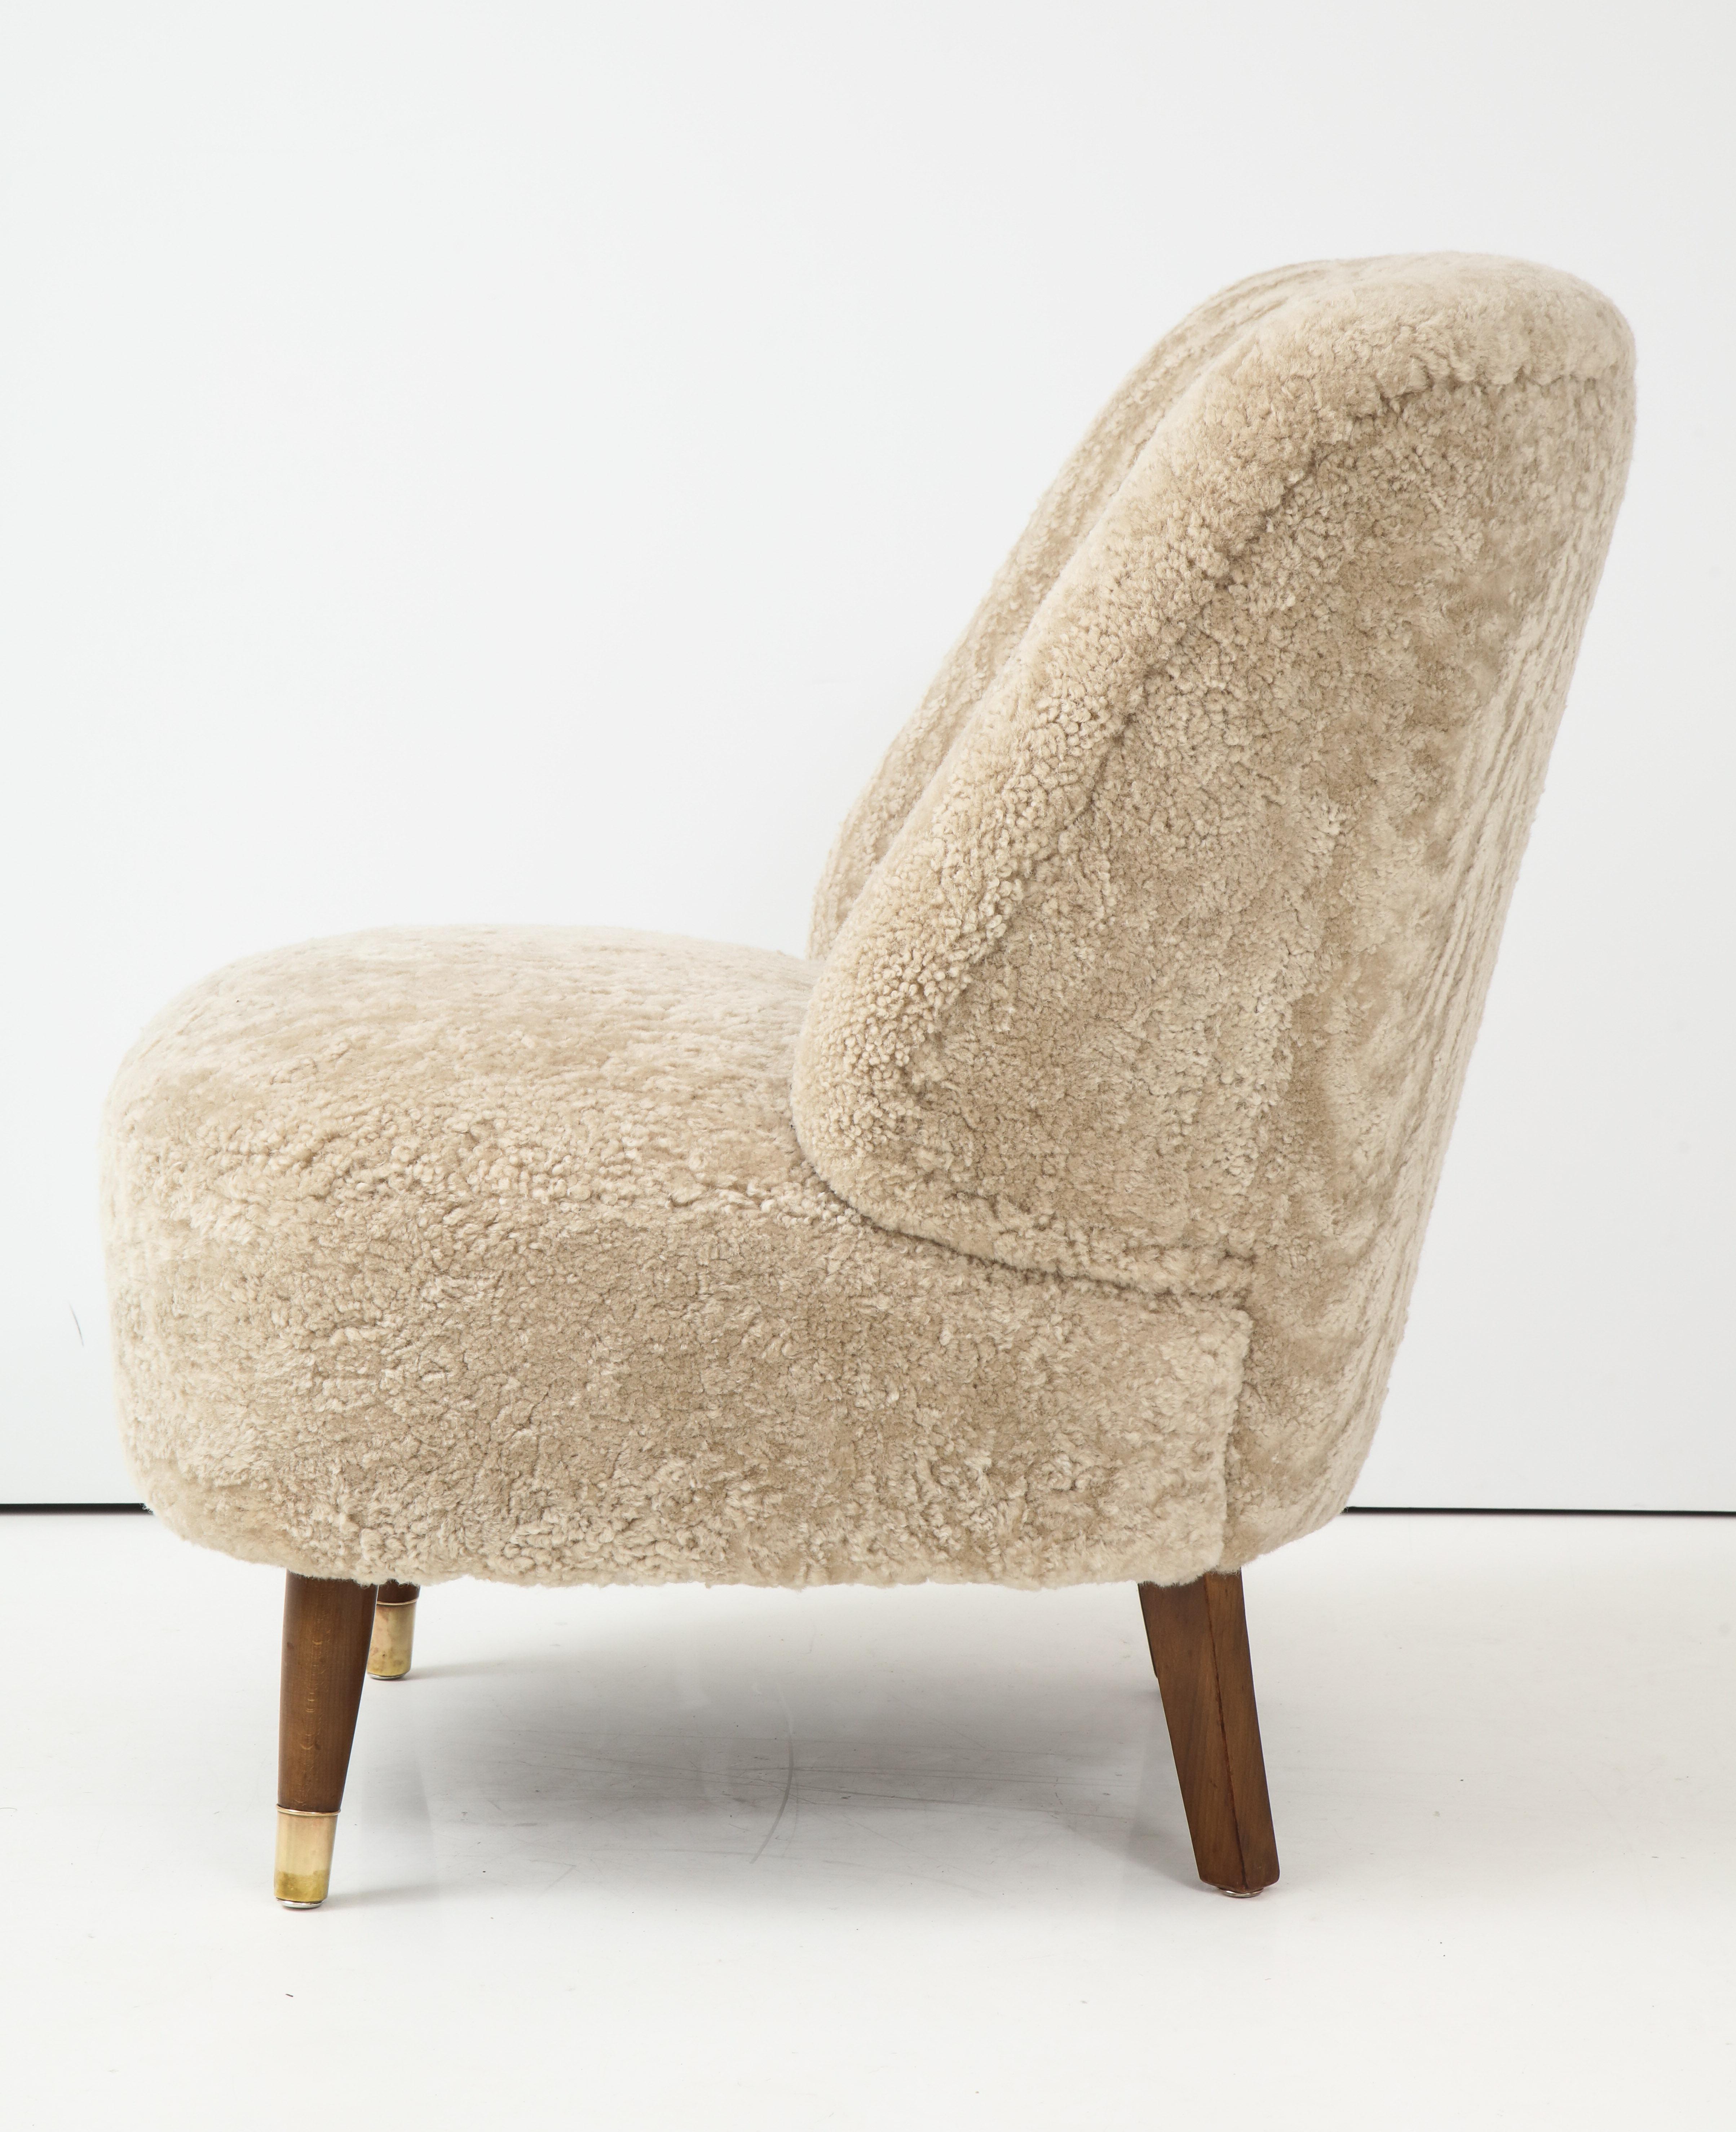 Pair of Danish Design Sheepskin Upholstered Chairs, circa 1930s 4